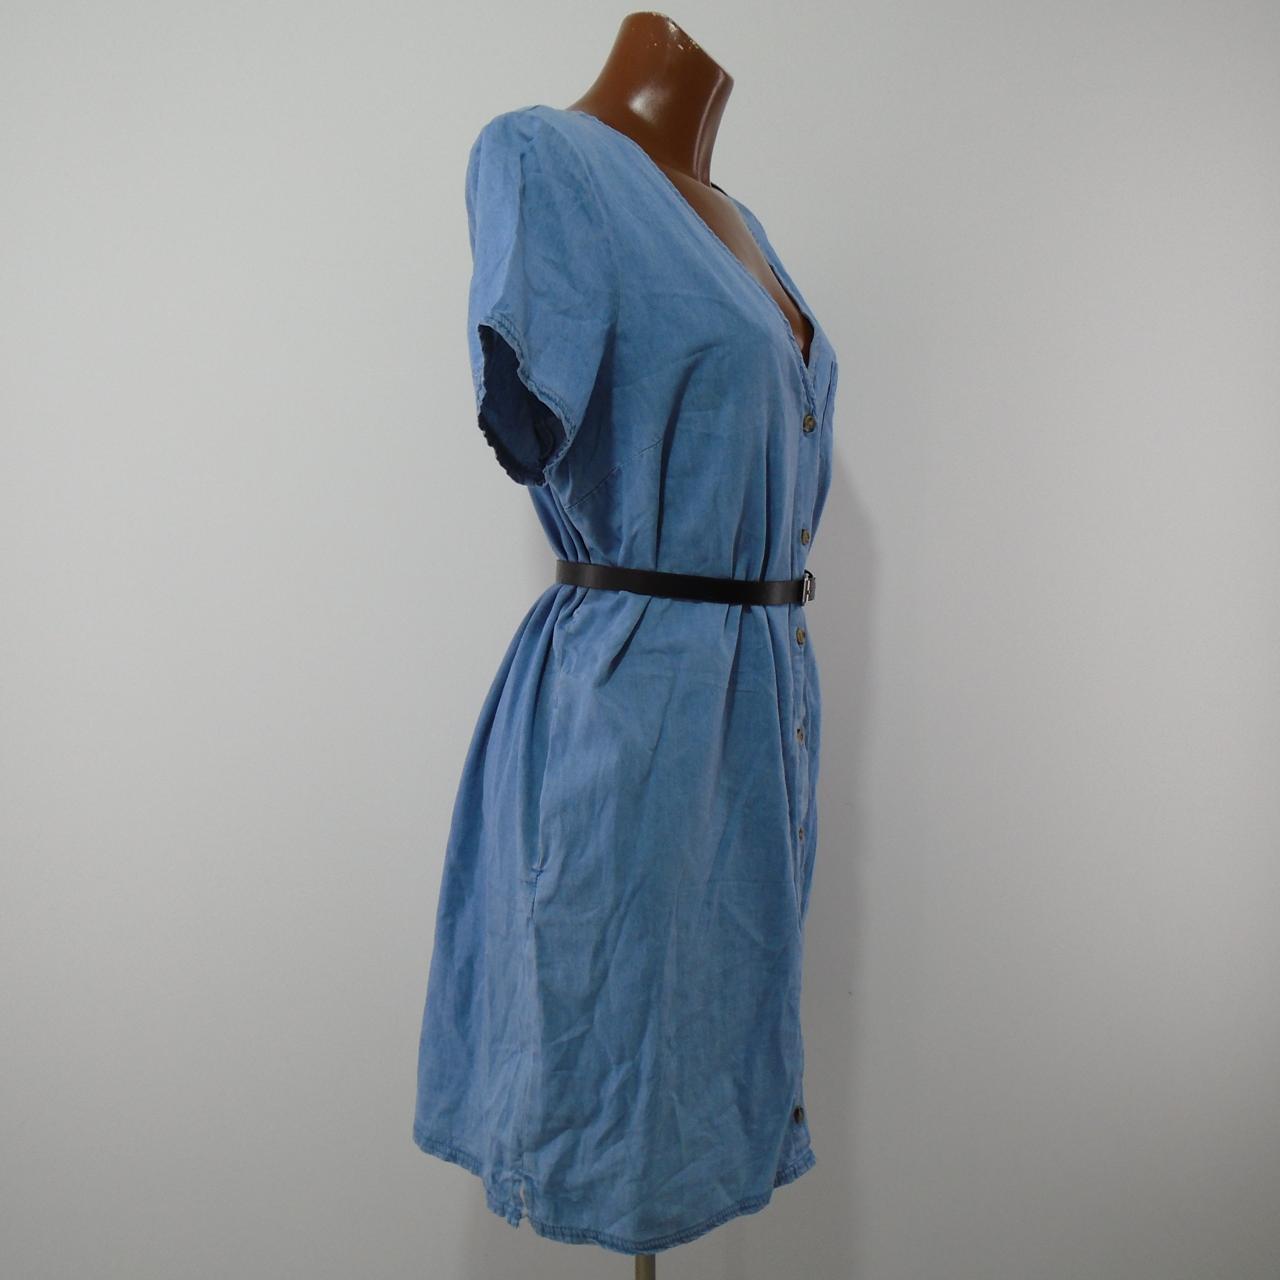 Vestido Mujer Kiabi. Azul. L. Usado. Bien